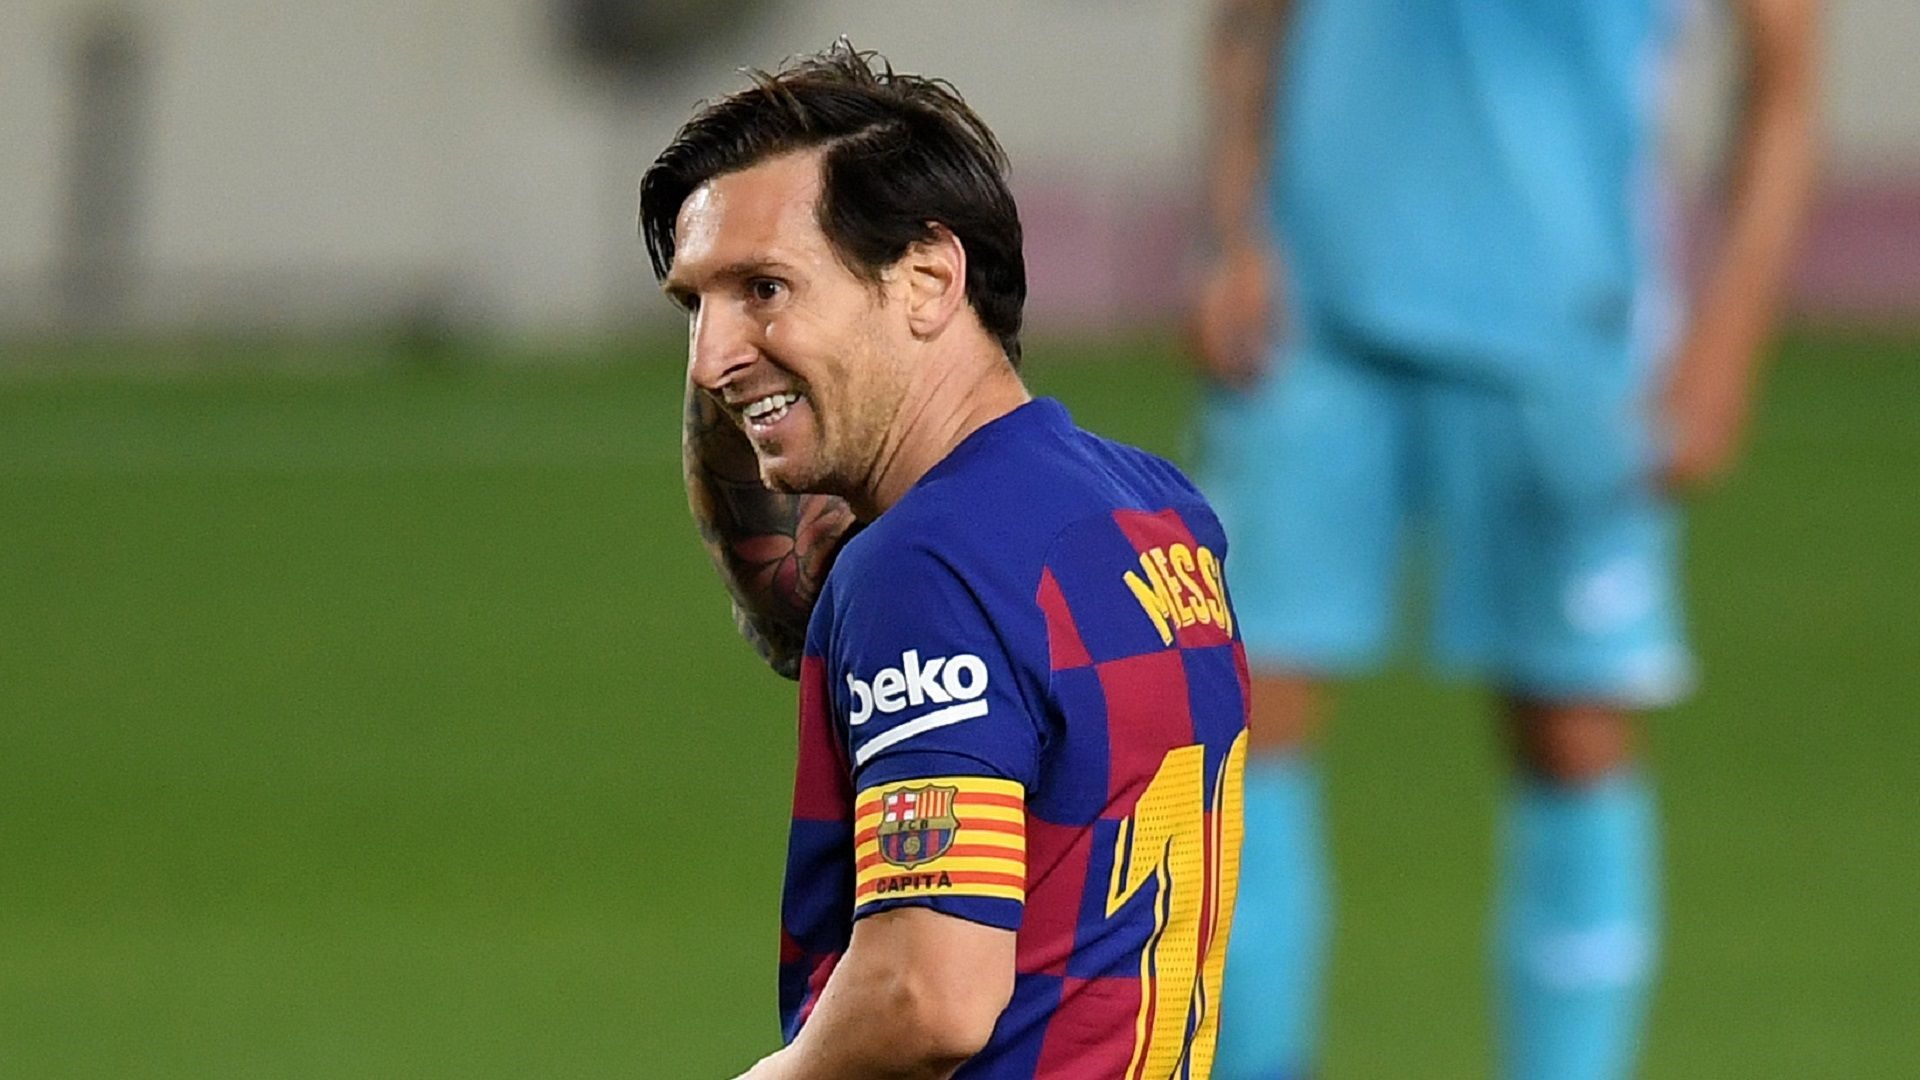 Chúng tôi gọi anh ấy là người lùn! - Câu chuyện về những ngày đầu tiên của Messi tại Barcelona (Phần 1)